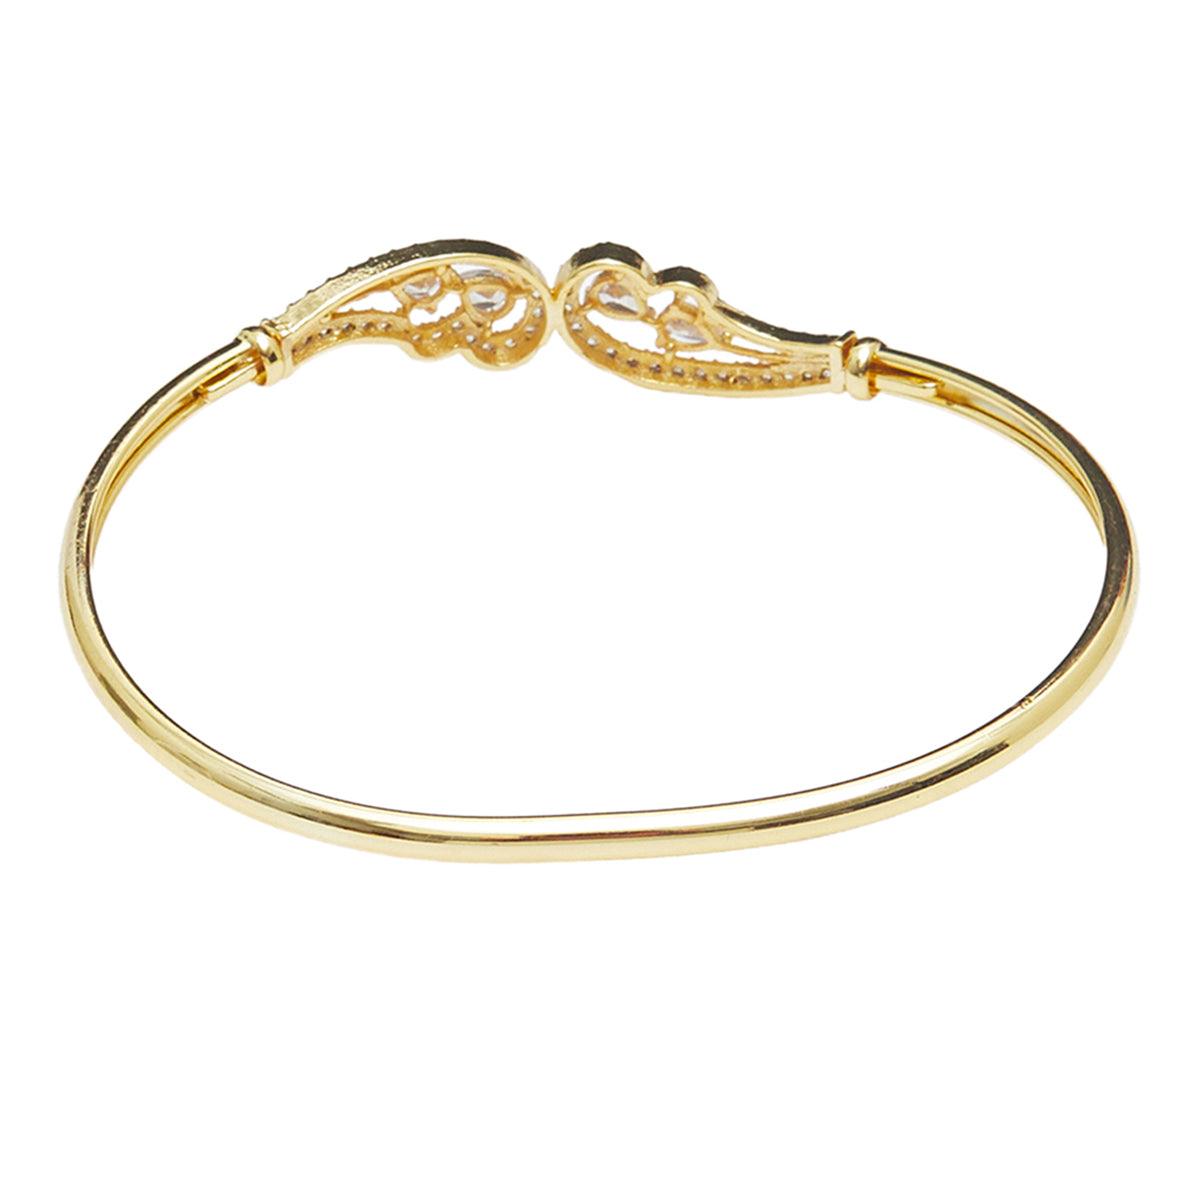 Gold Finish Infinity Inspired Bracelet